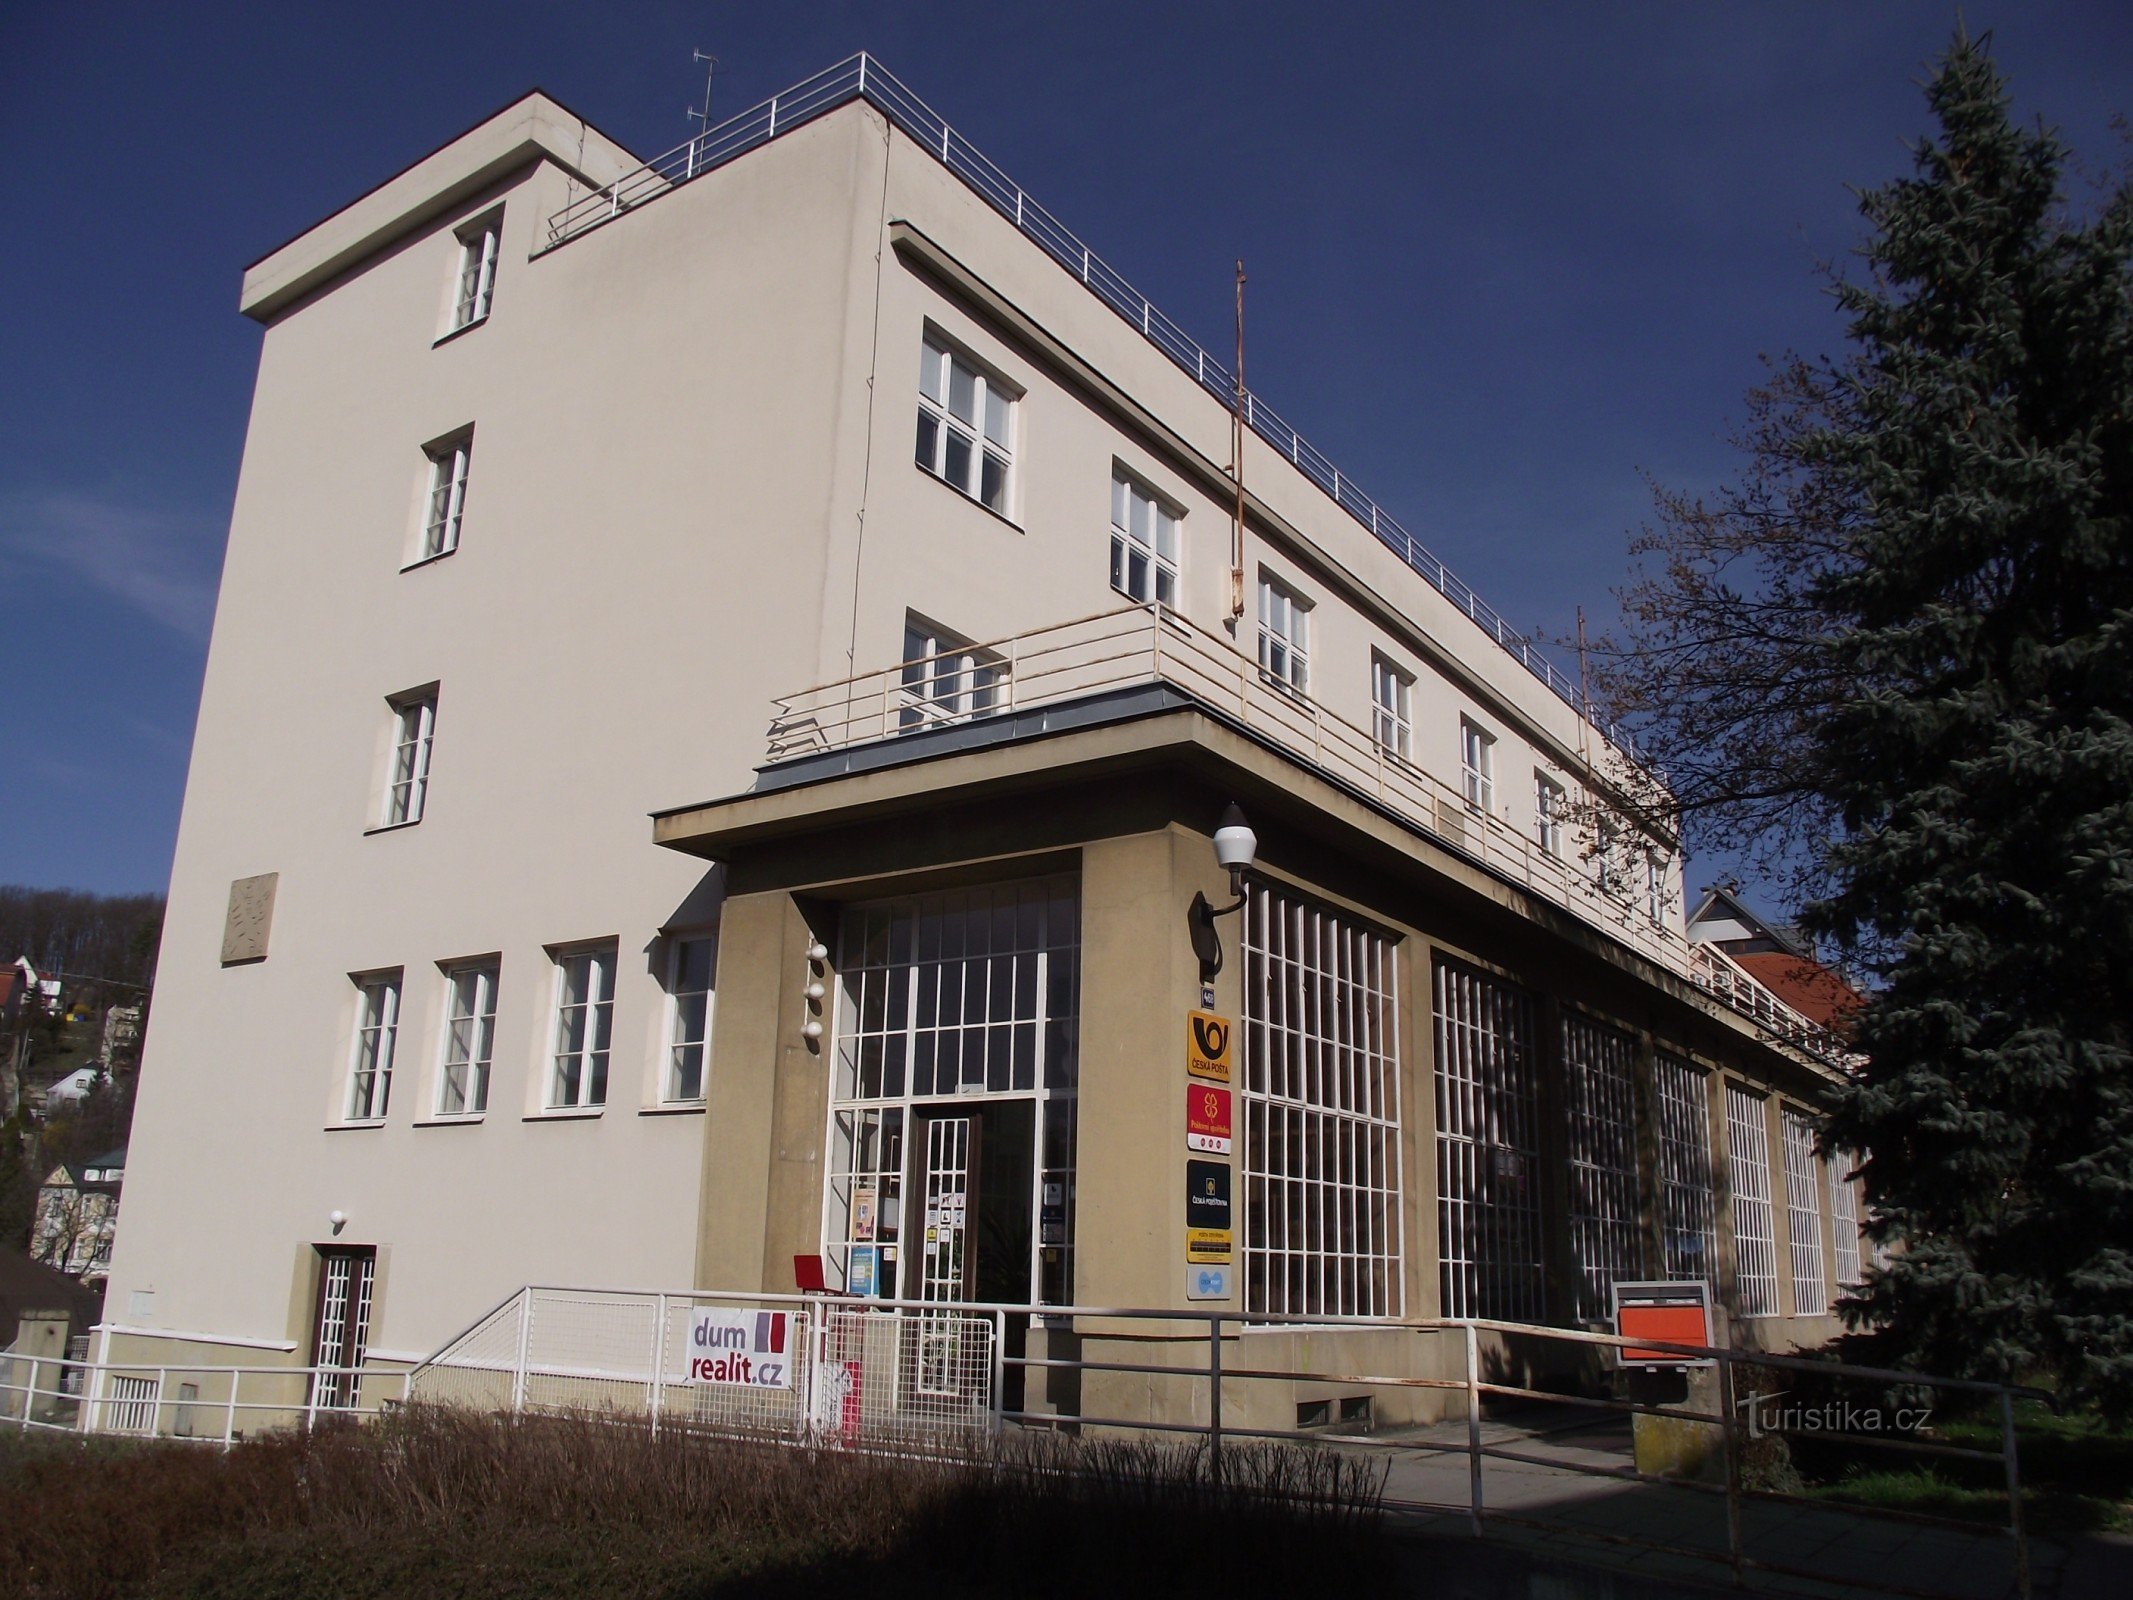 Luhačovice - ufficio postale